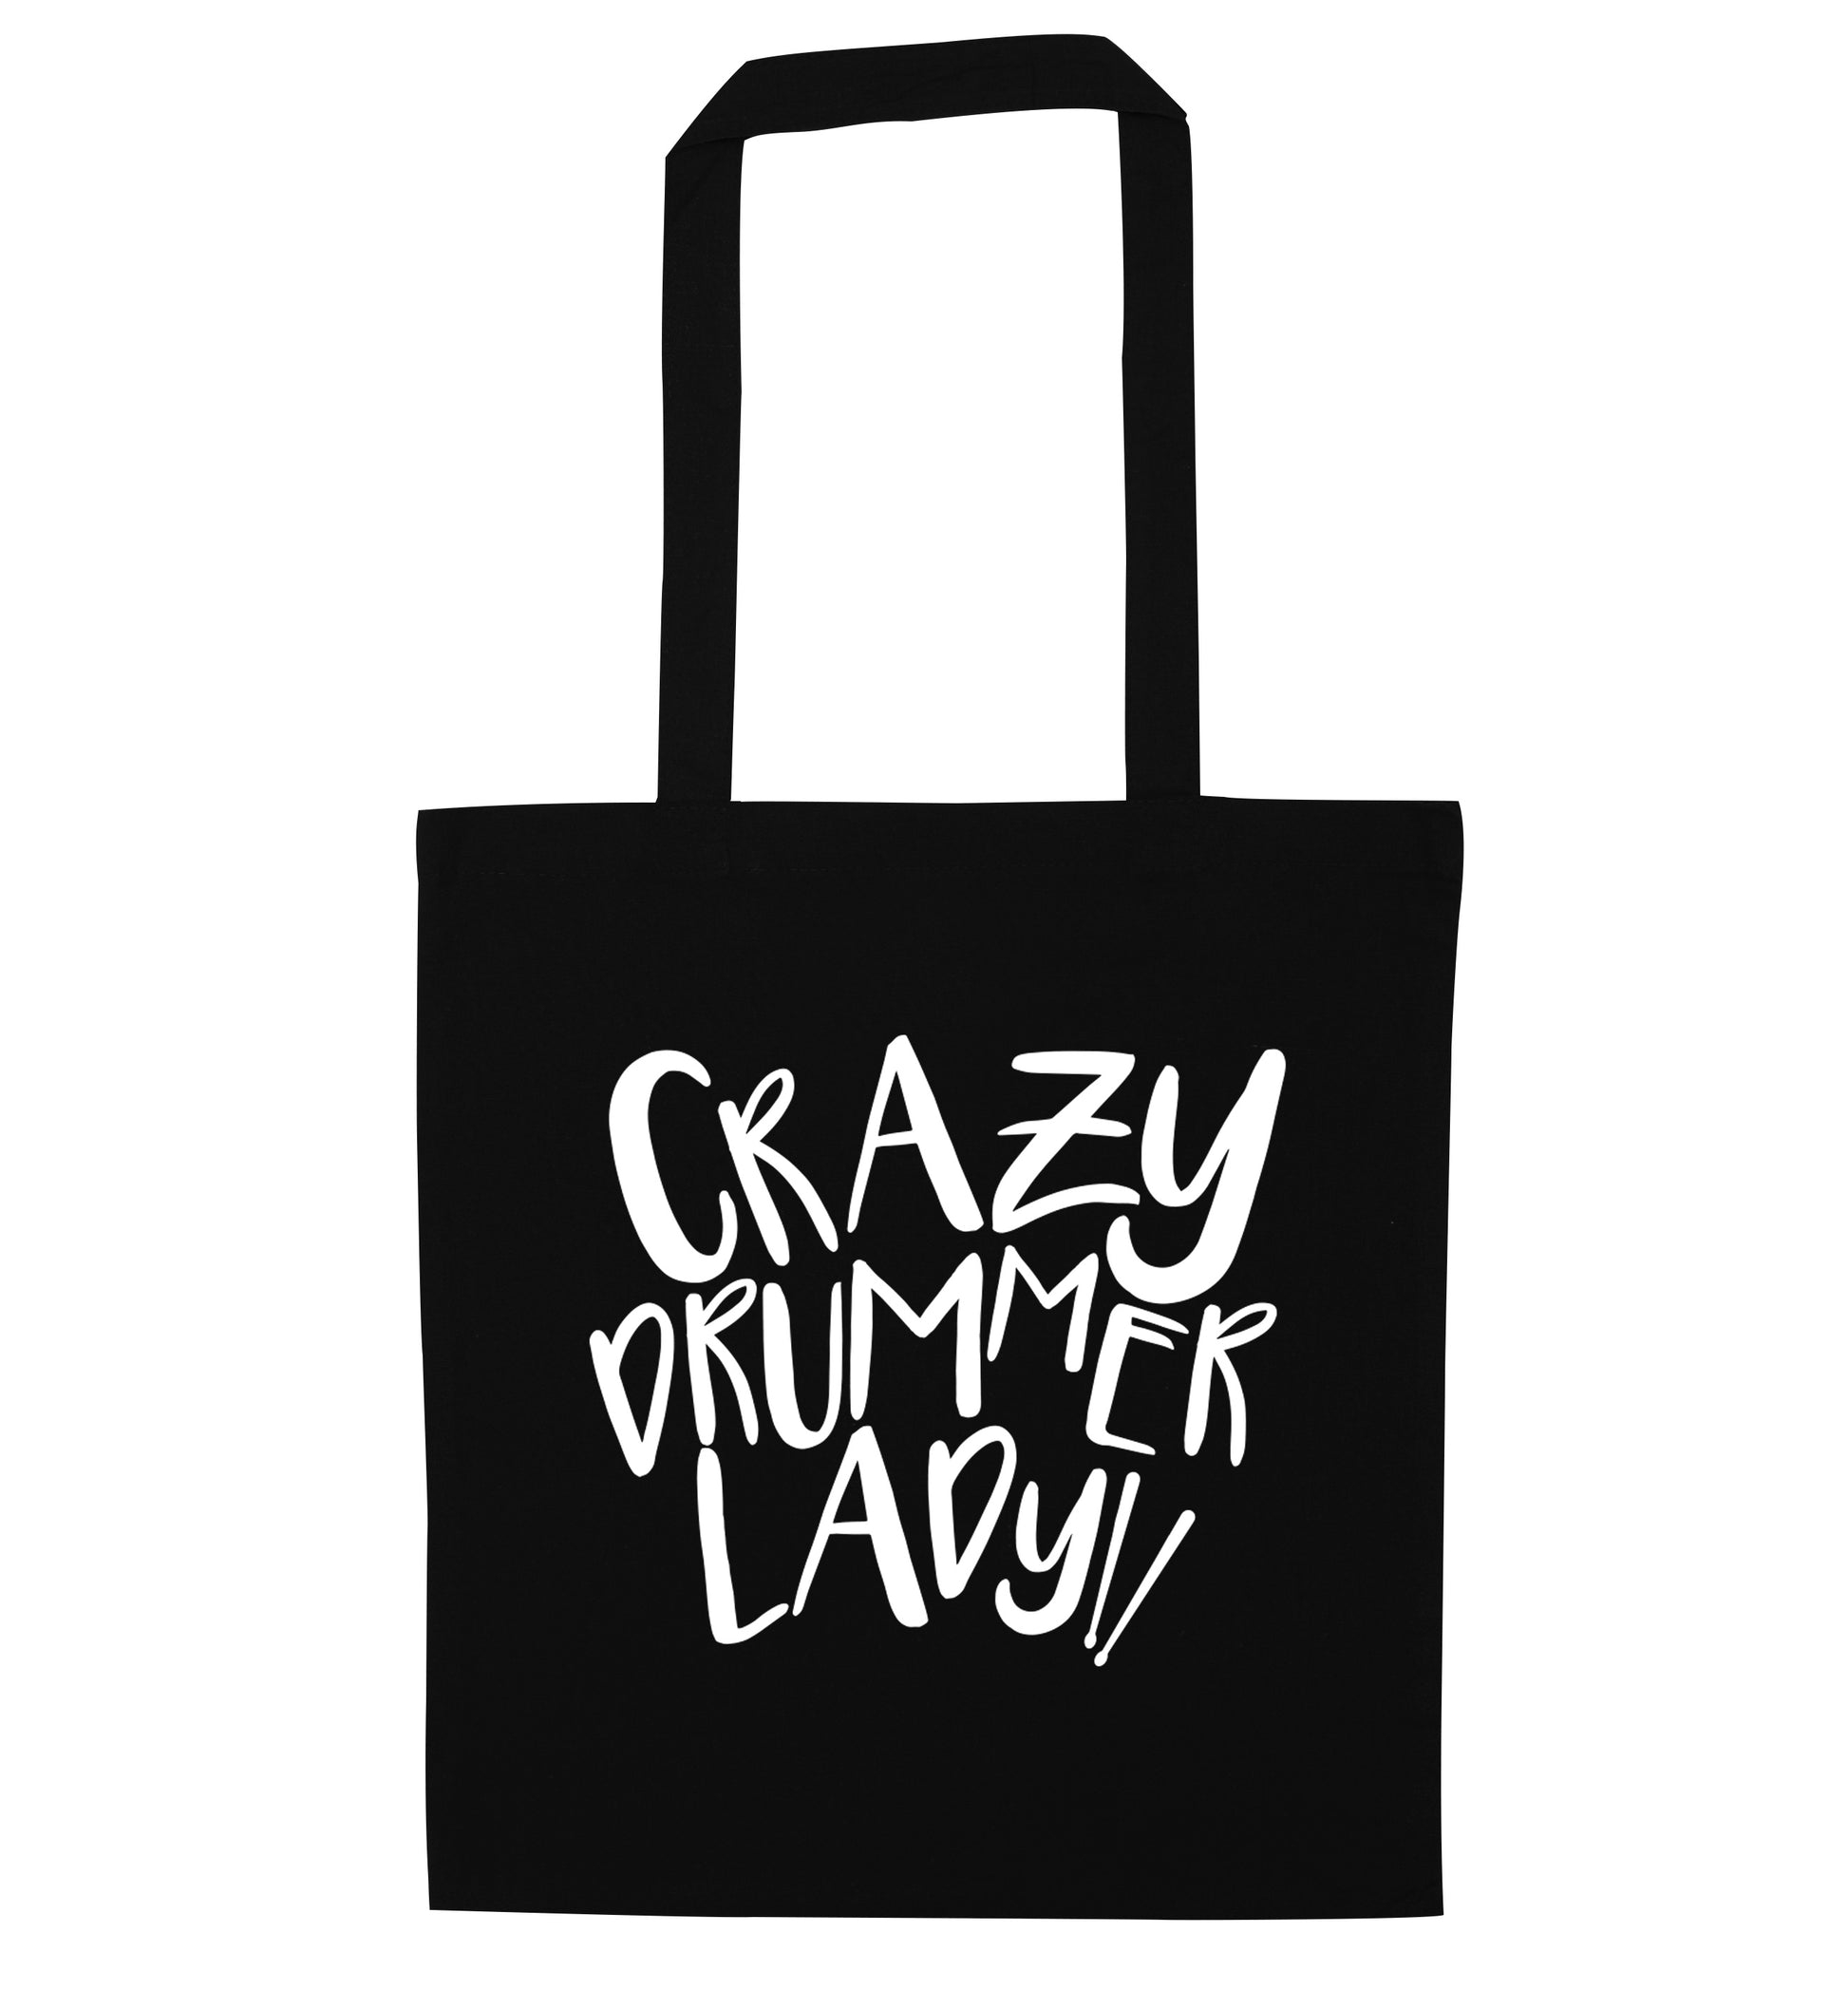 Crazy drummer lady black tote bag